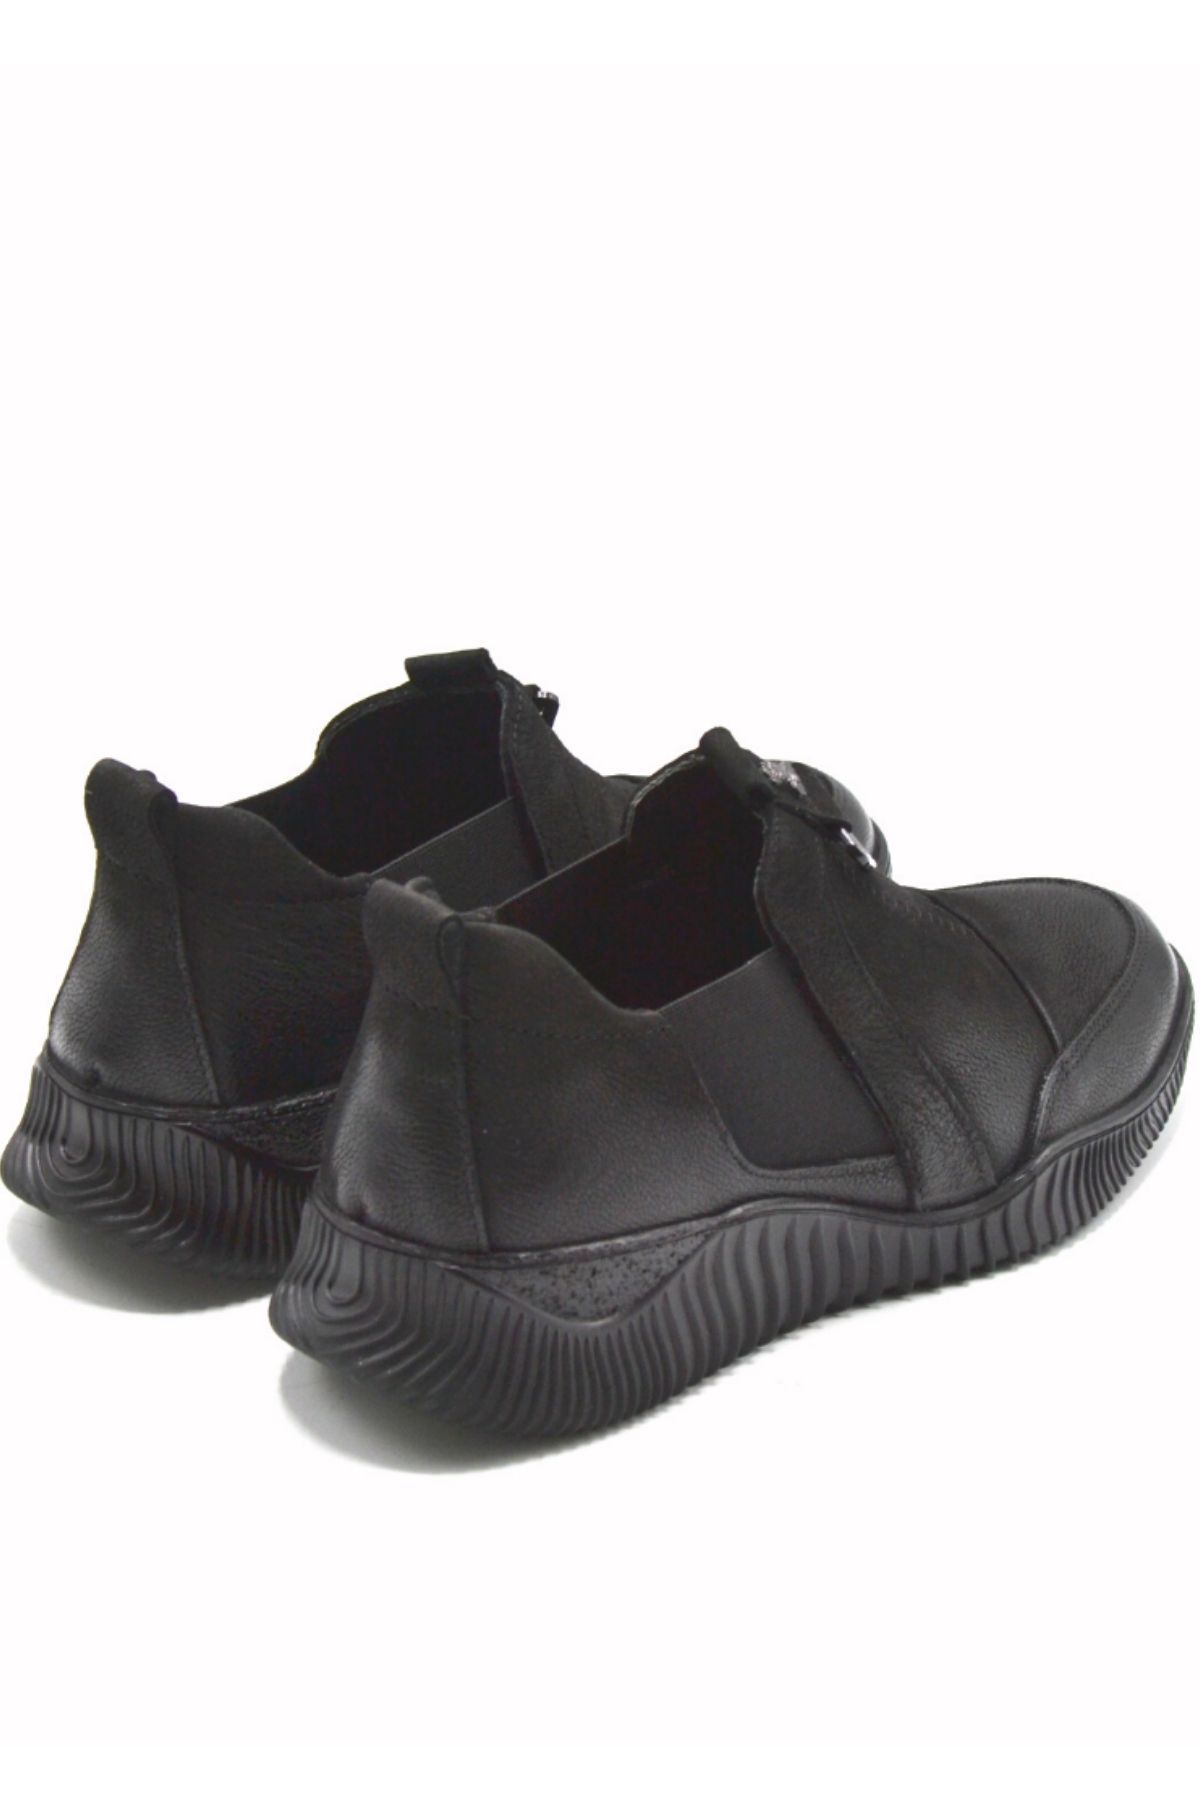 Kadın Comfort Deri Ayakkabı Siyah 1953840K - Thumbnail